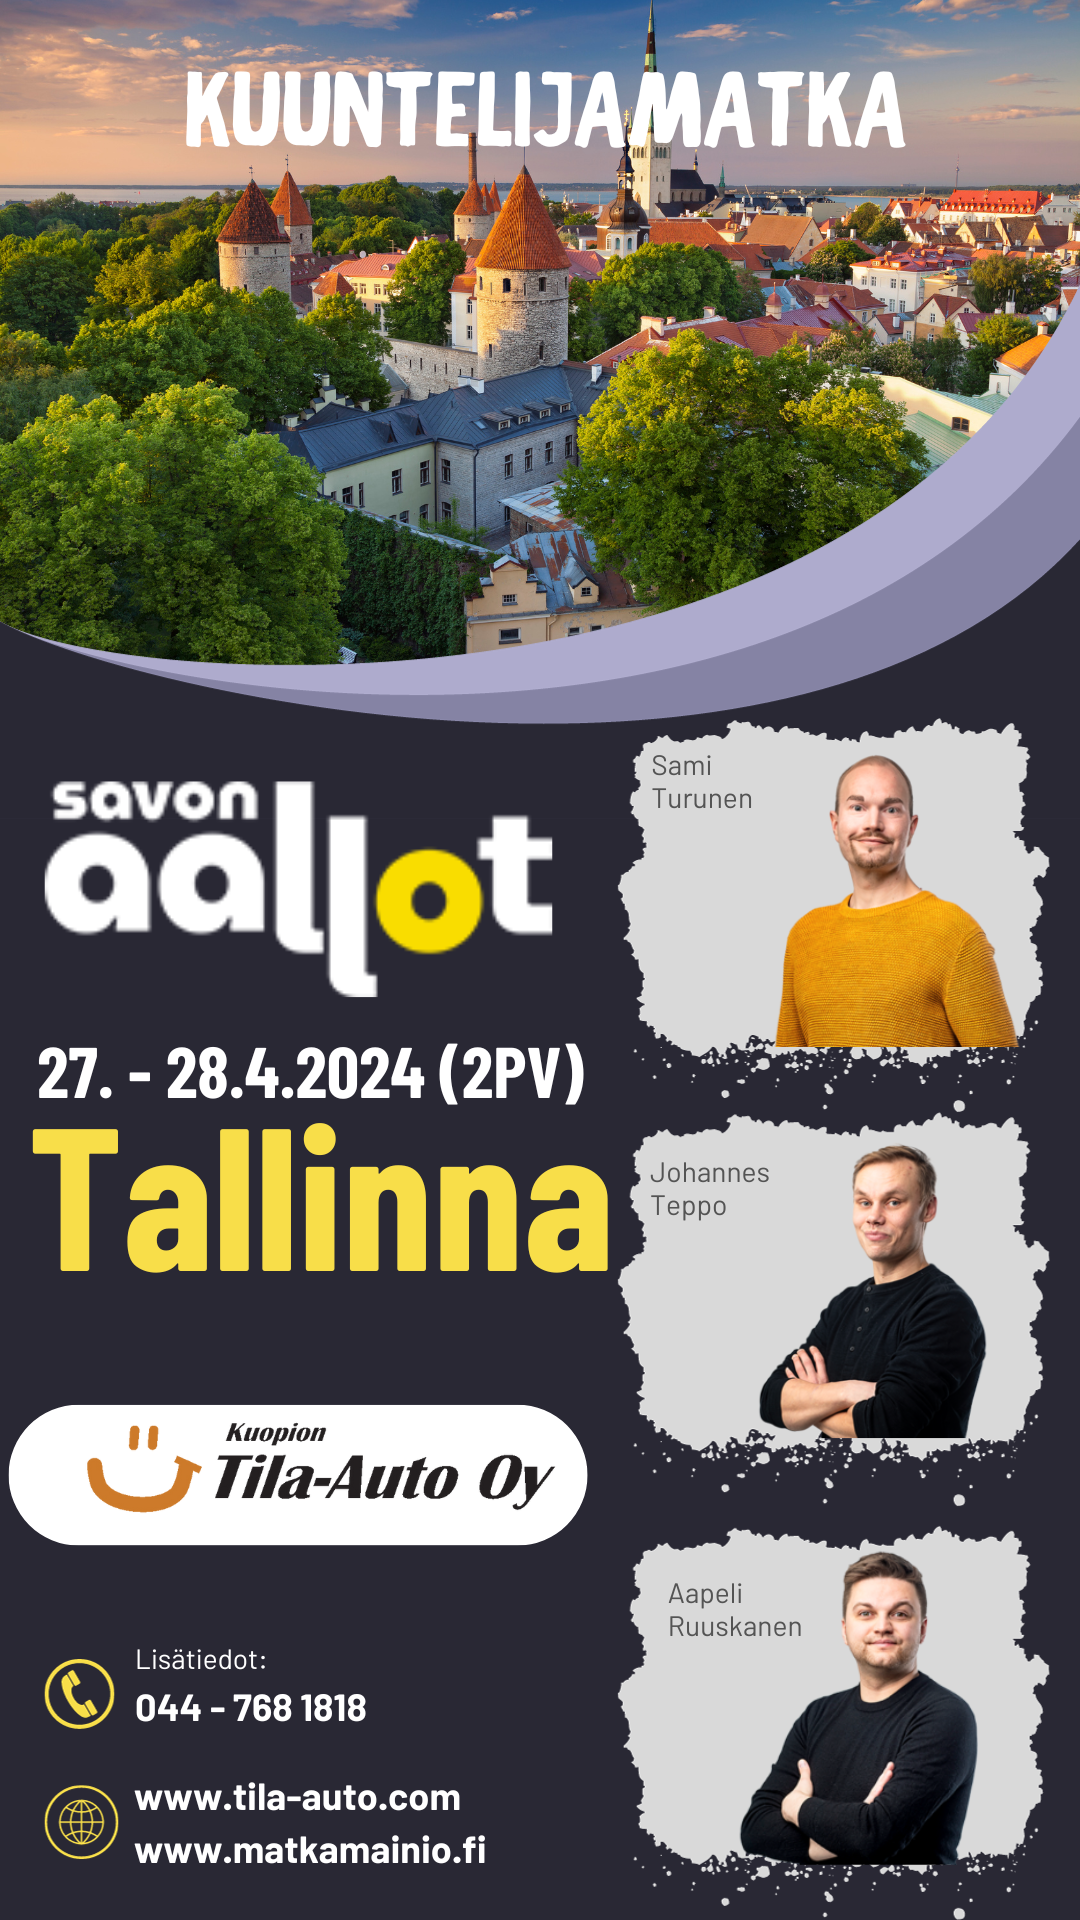 27. - 28.4.2024 Savon Aallot kuuntelijamatka Tallinnaan